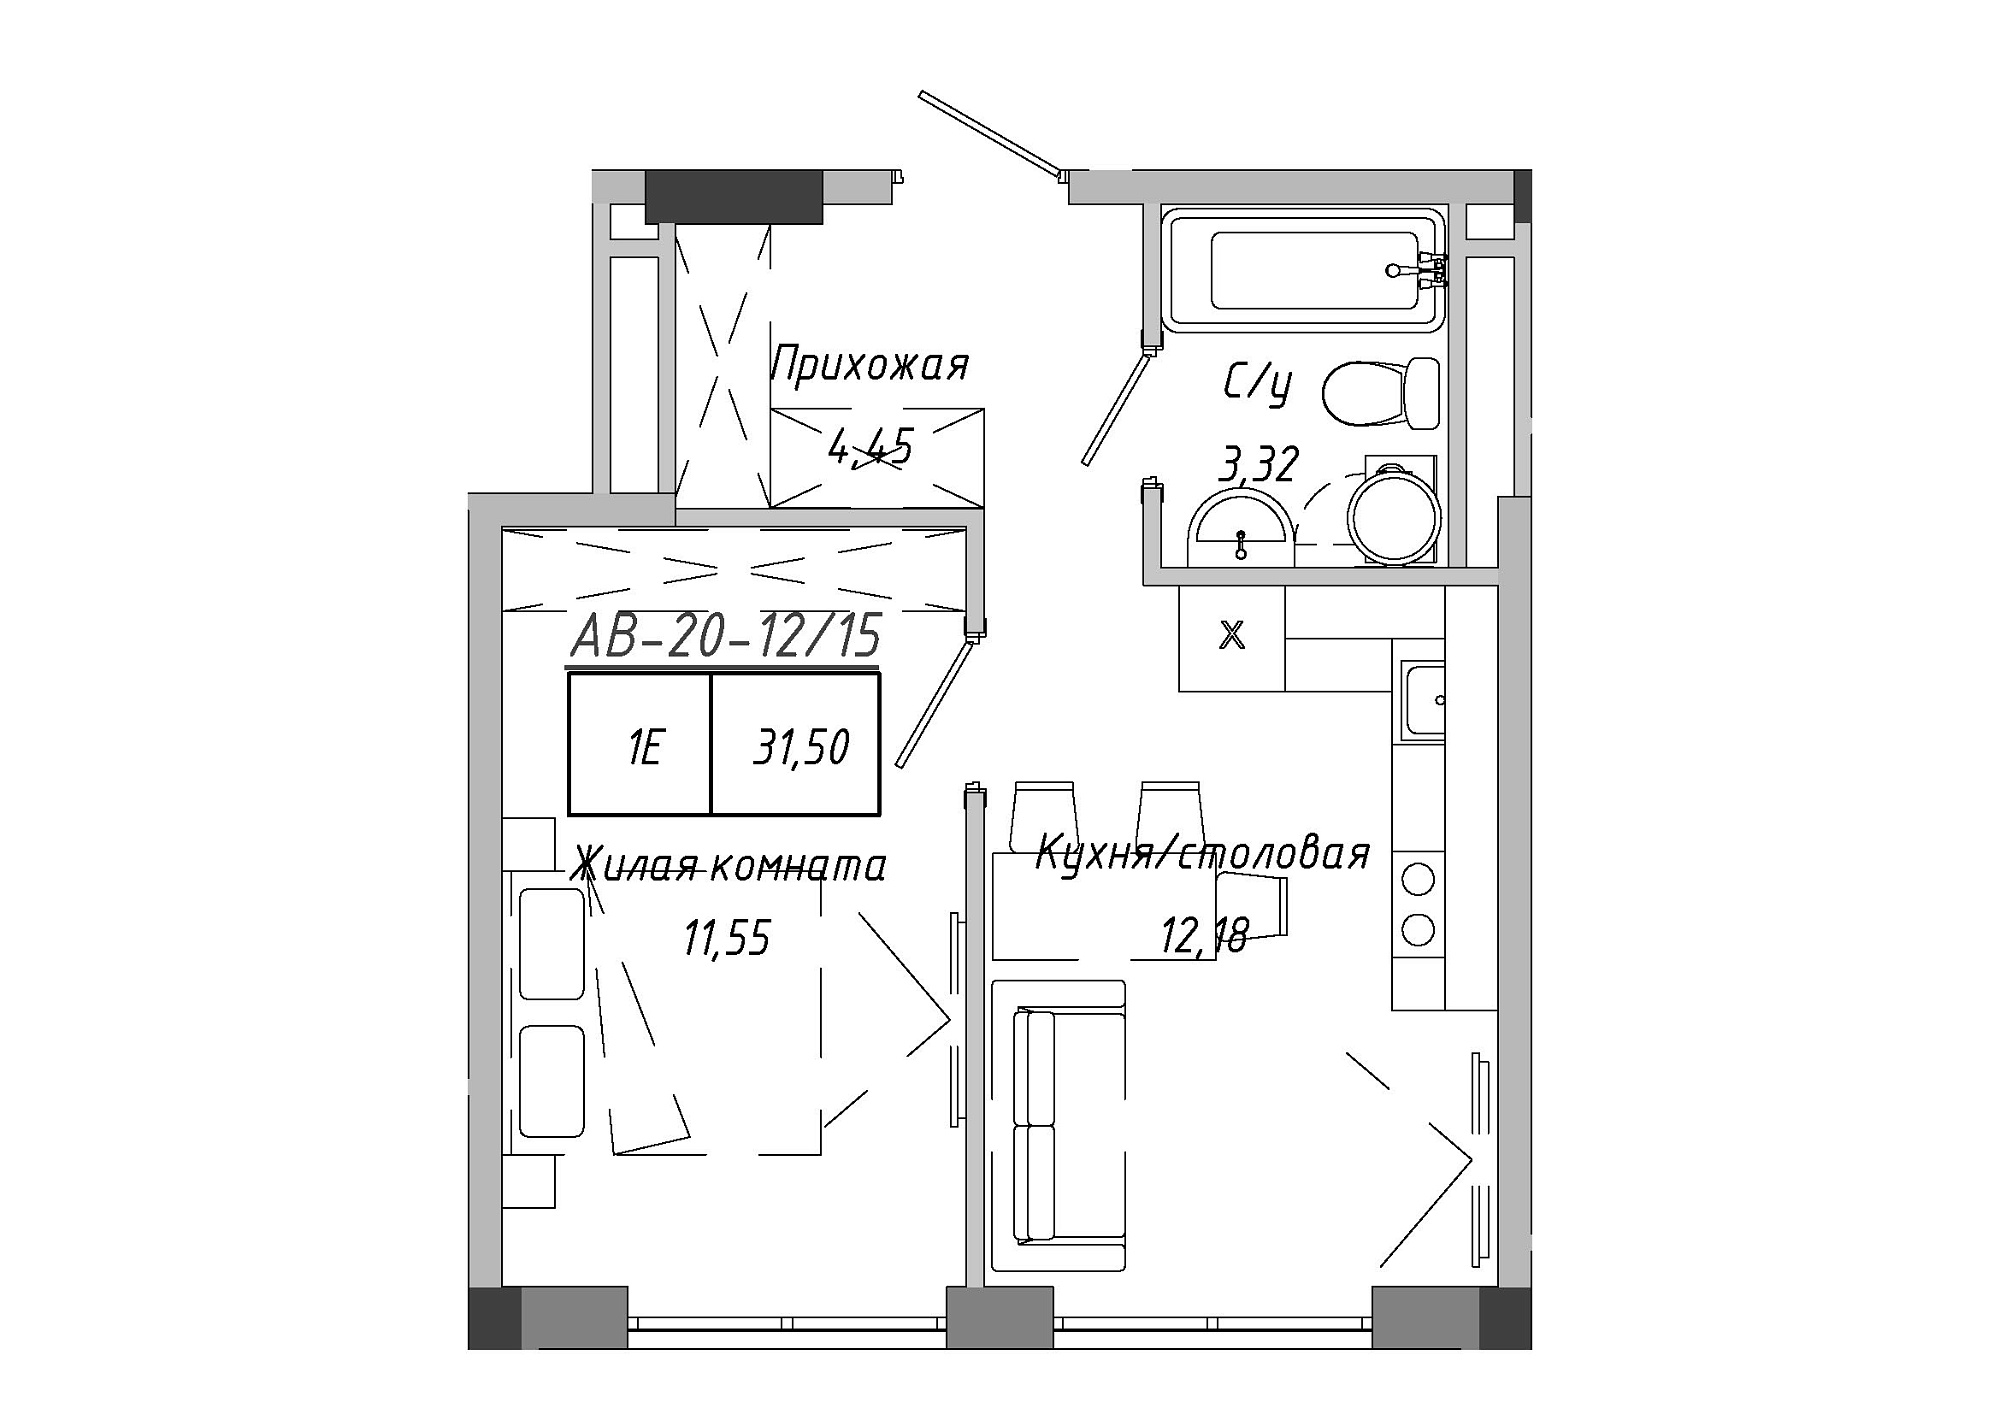 Планування 1-к квартира площею 31.51м2, AB-20-12/00015.